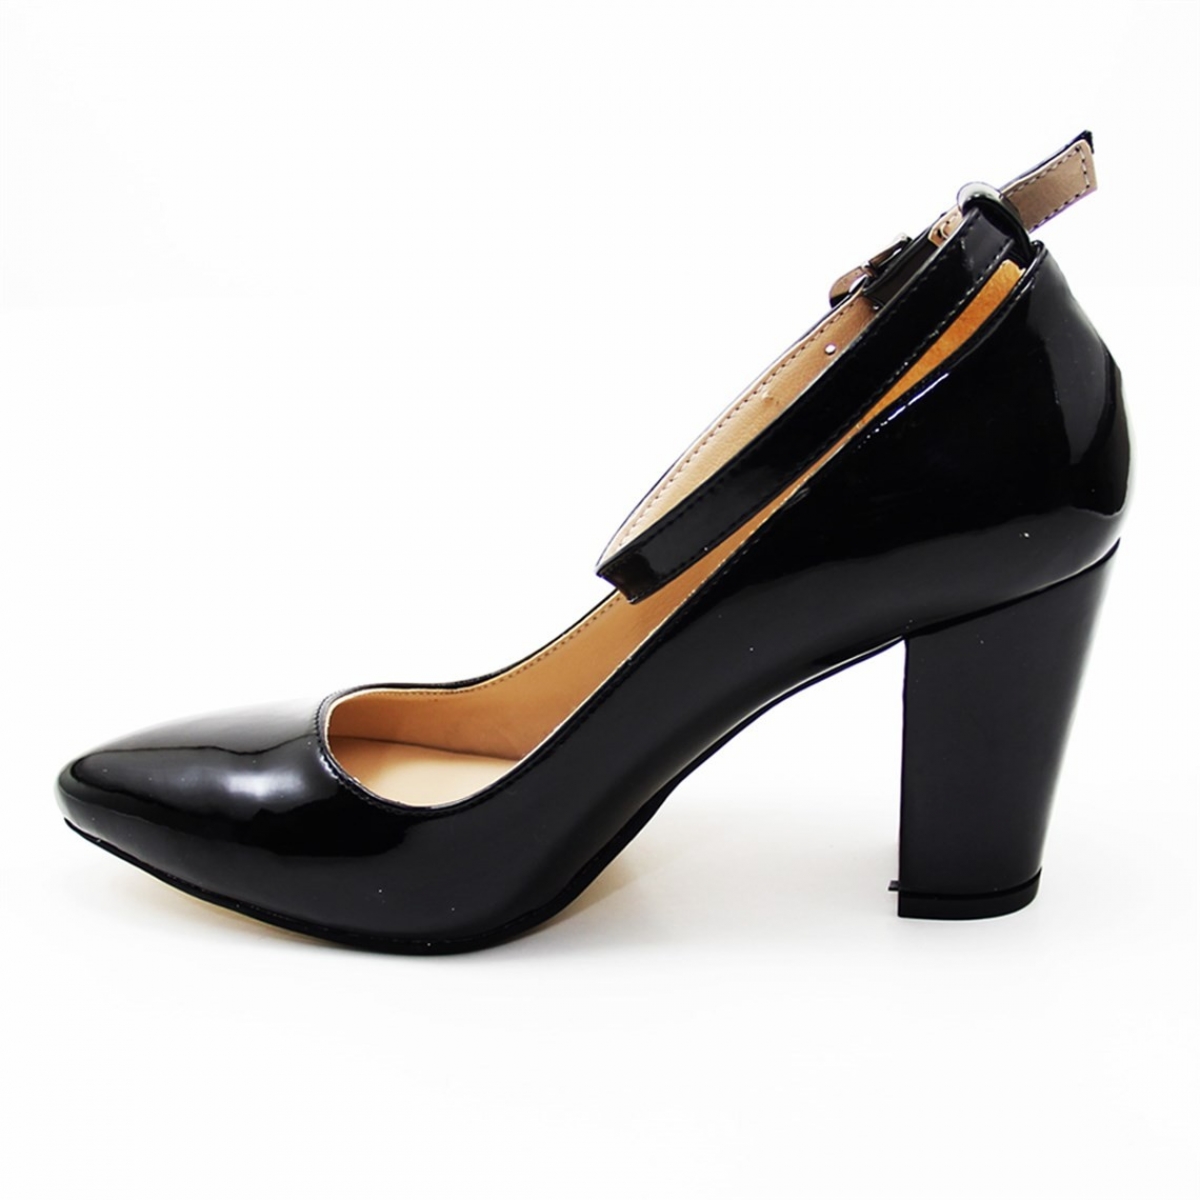 Flo Günlük Topuklu Siyah-Baskılı Kadın Ayakkabı N-2601. 1